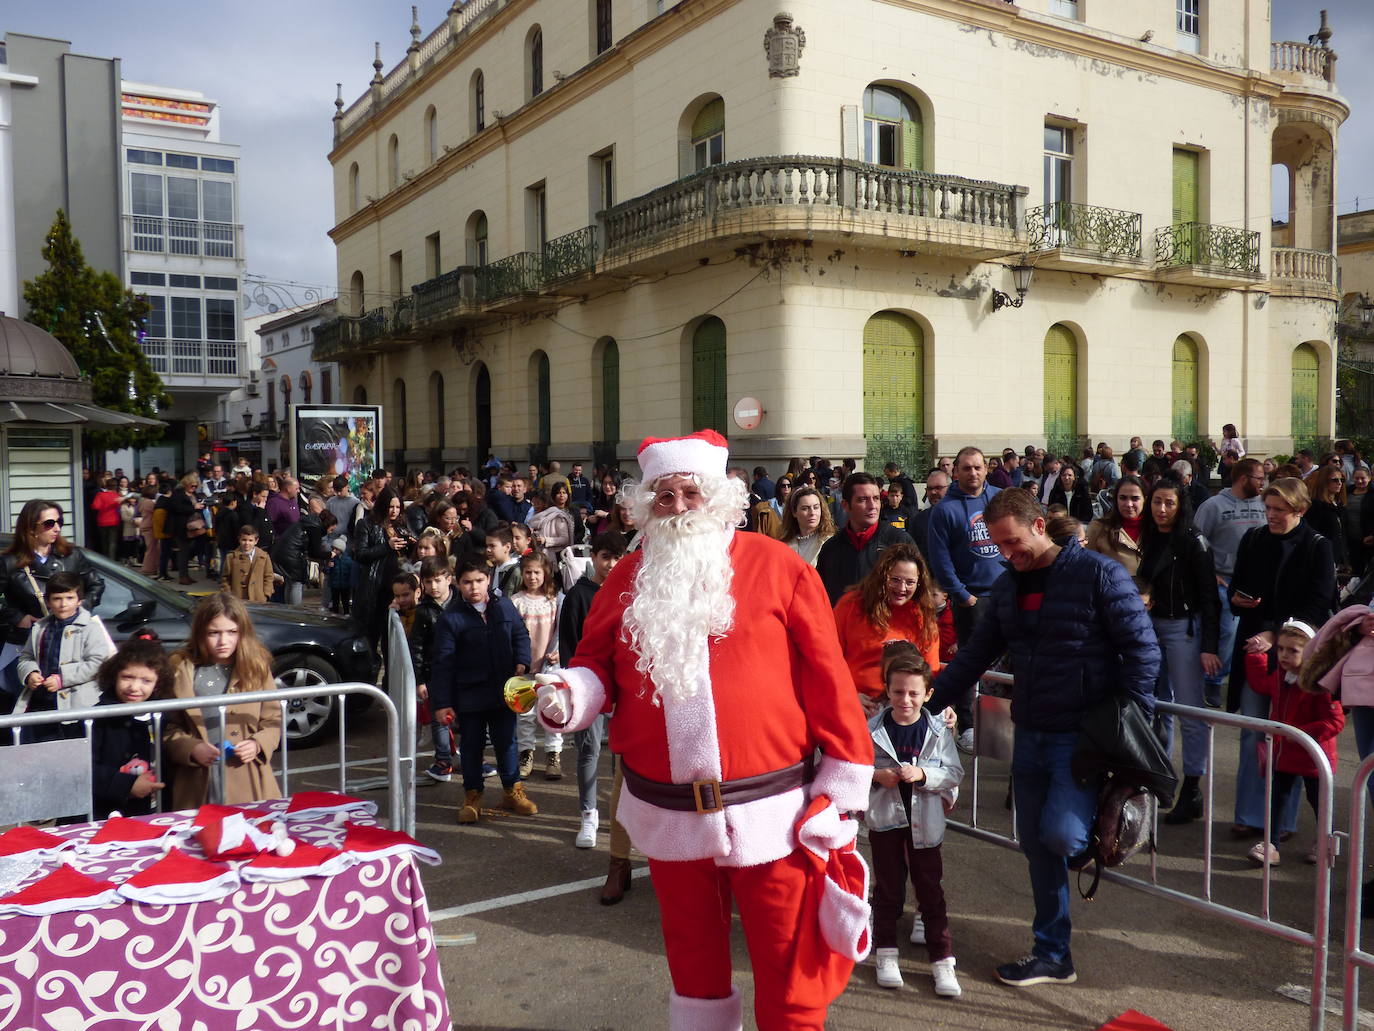 La cabalgata de Papá Noel volvió a llenar de ilusión las calles de Castuera